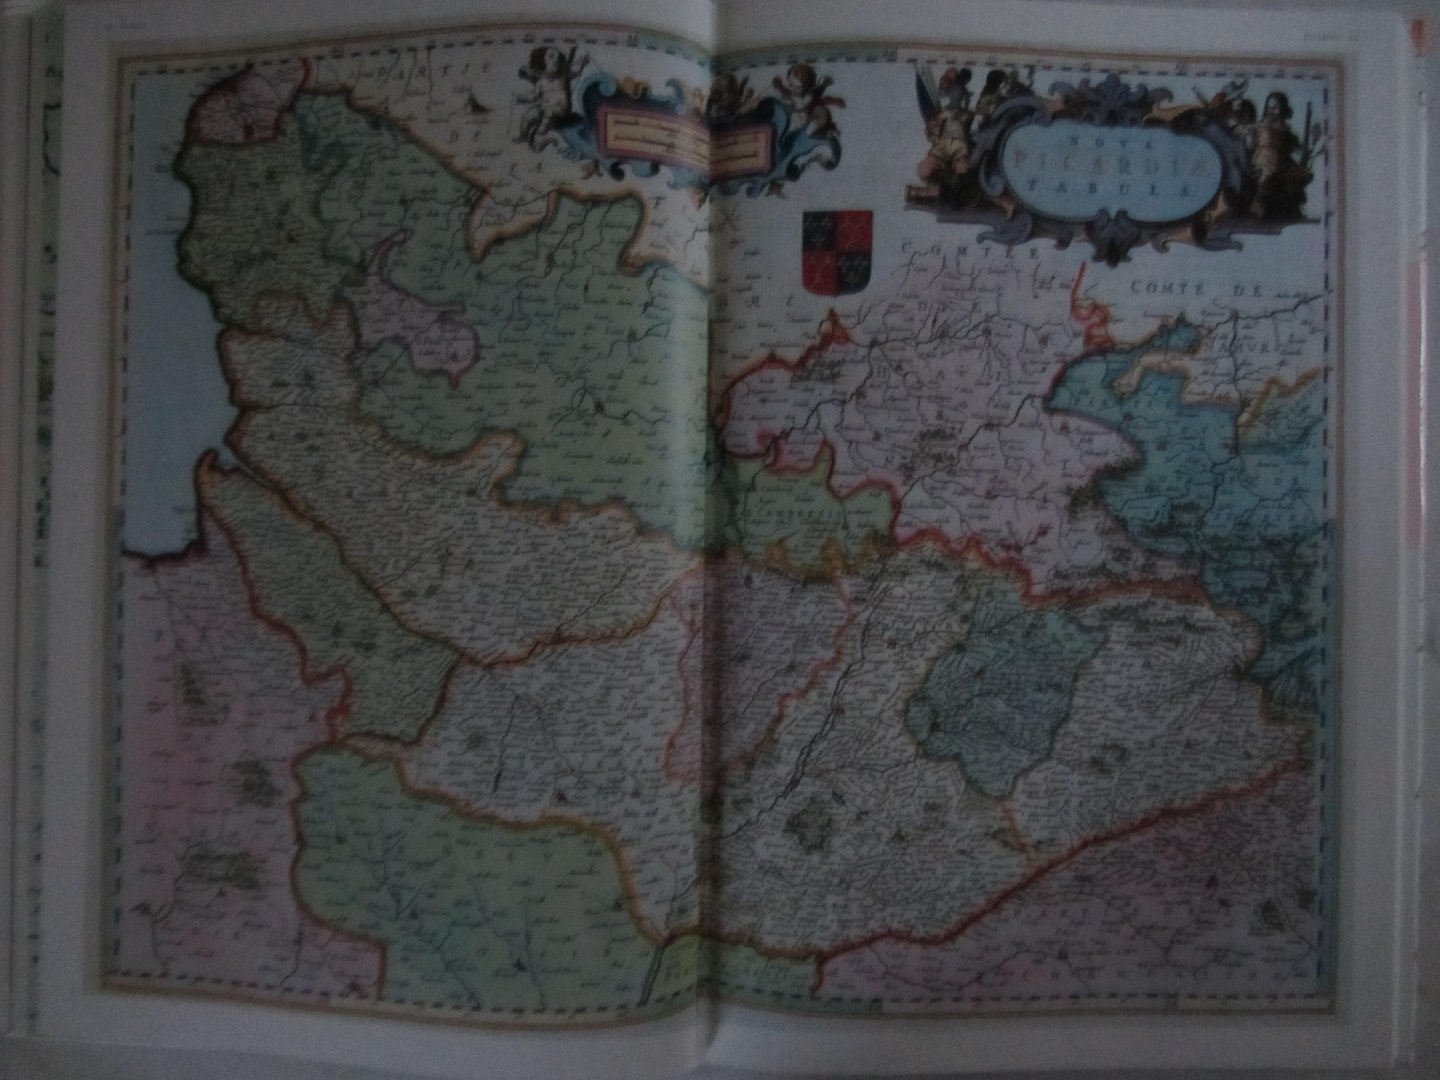 Blaeu, Joan, en Krogt, Peter van der - Atlas Maior of 1665, Gallia, All 64 maps of France, and the original commentaries from Joan Blaeu's Atlas Maior of 1665, "The greatest and finest Atlas ever published"